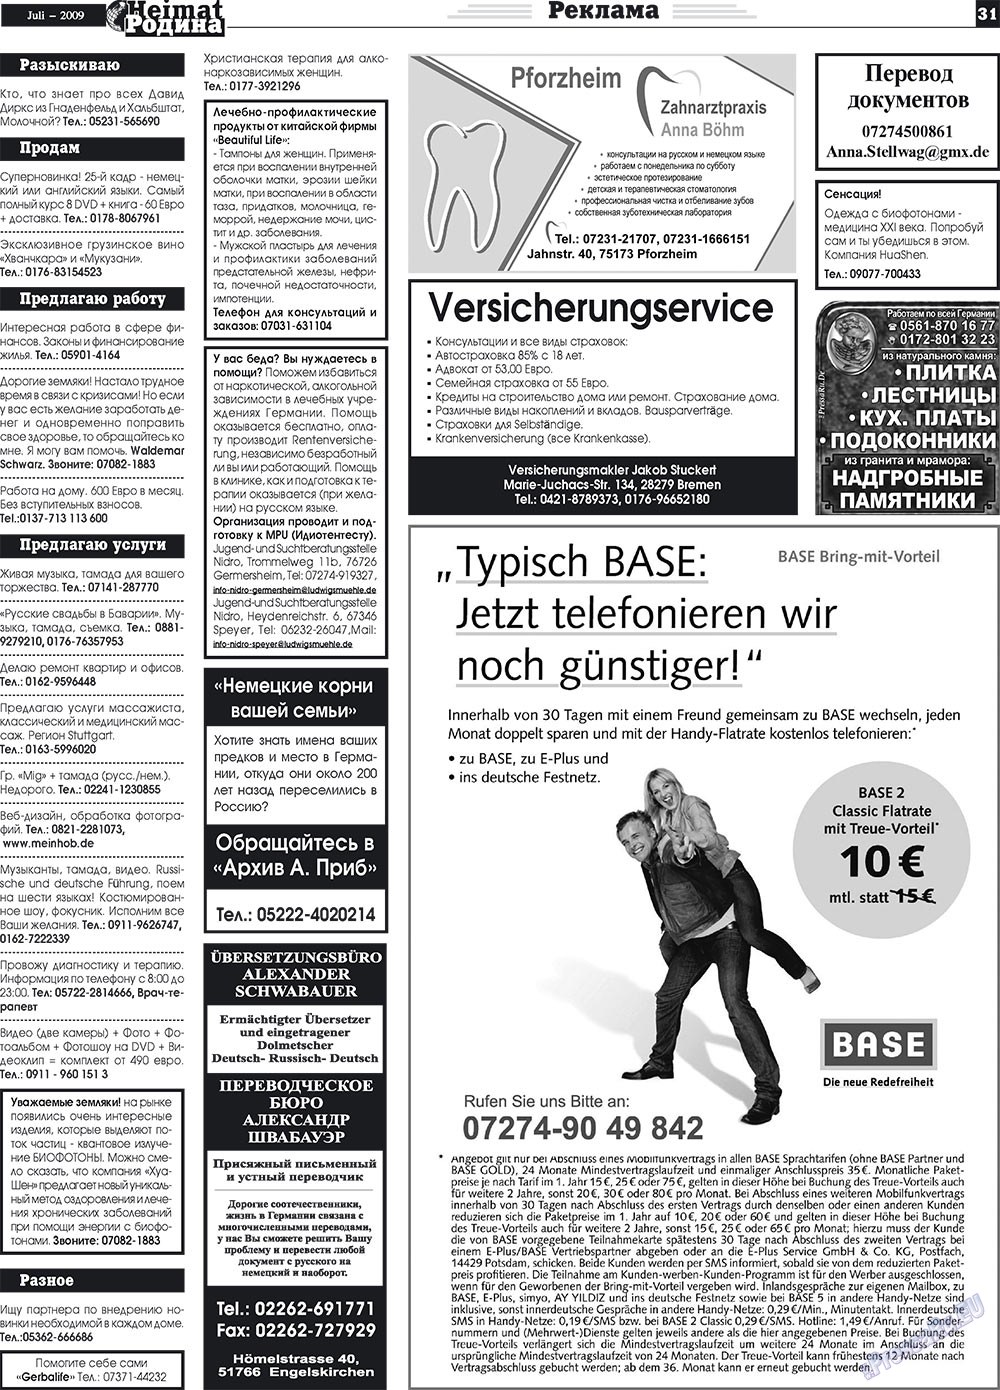 Heimat-Родина (газета). 2009 год, номер 7, стр. 31